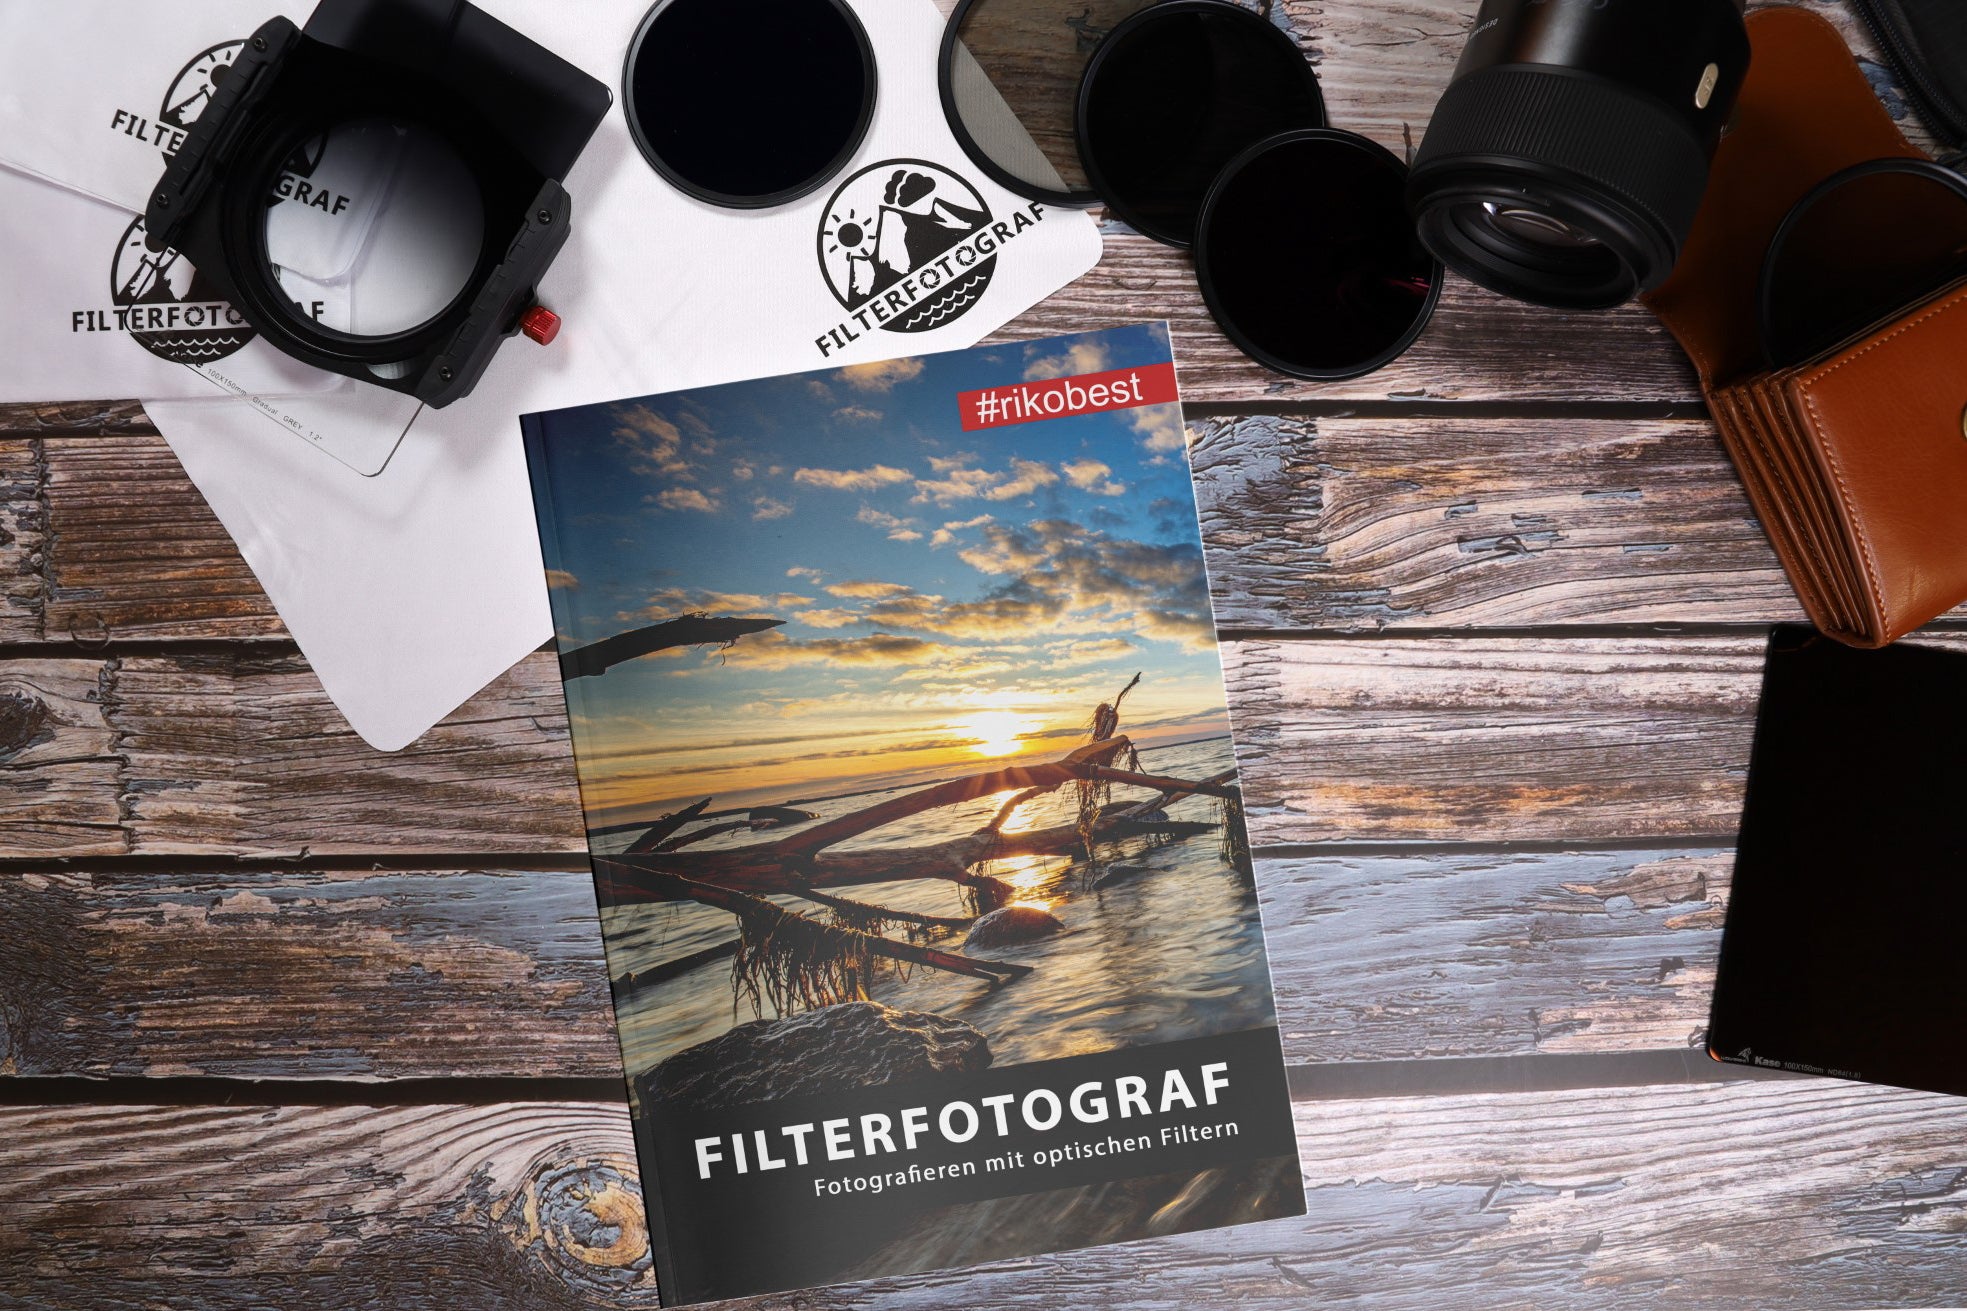 Riko Best Filterfotograf Buch 2 - Experte Riko Best verrät, wie Kamerafilter deine Bilder besser machen